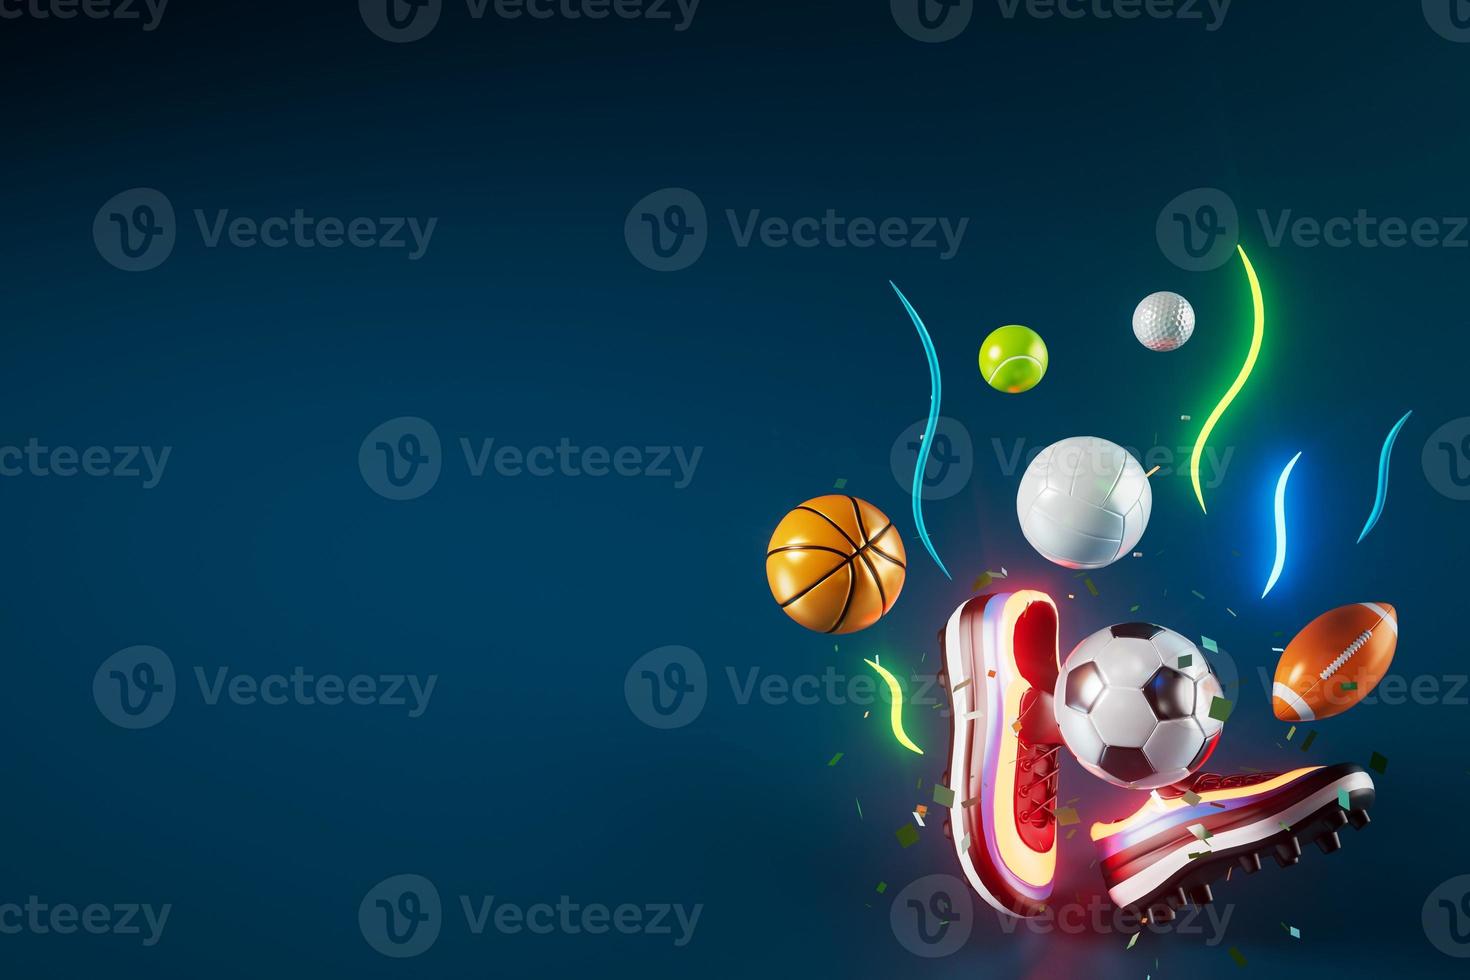 Projeto de objeto de futebol 3D. renderização realista. abstrato futurista. ilustração 3D. conceito de geometria de movimento. gráfico de competição esportiva. conteúdo de apostas de jogos de torneios. elemento de bola de futebol. foto